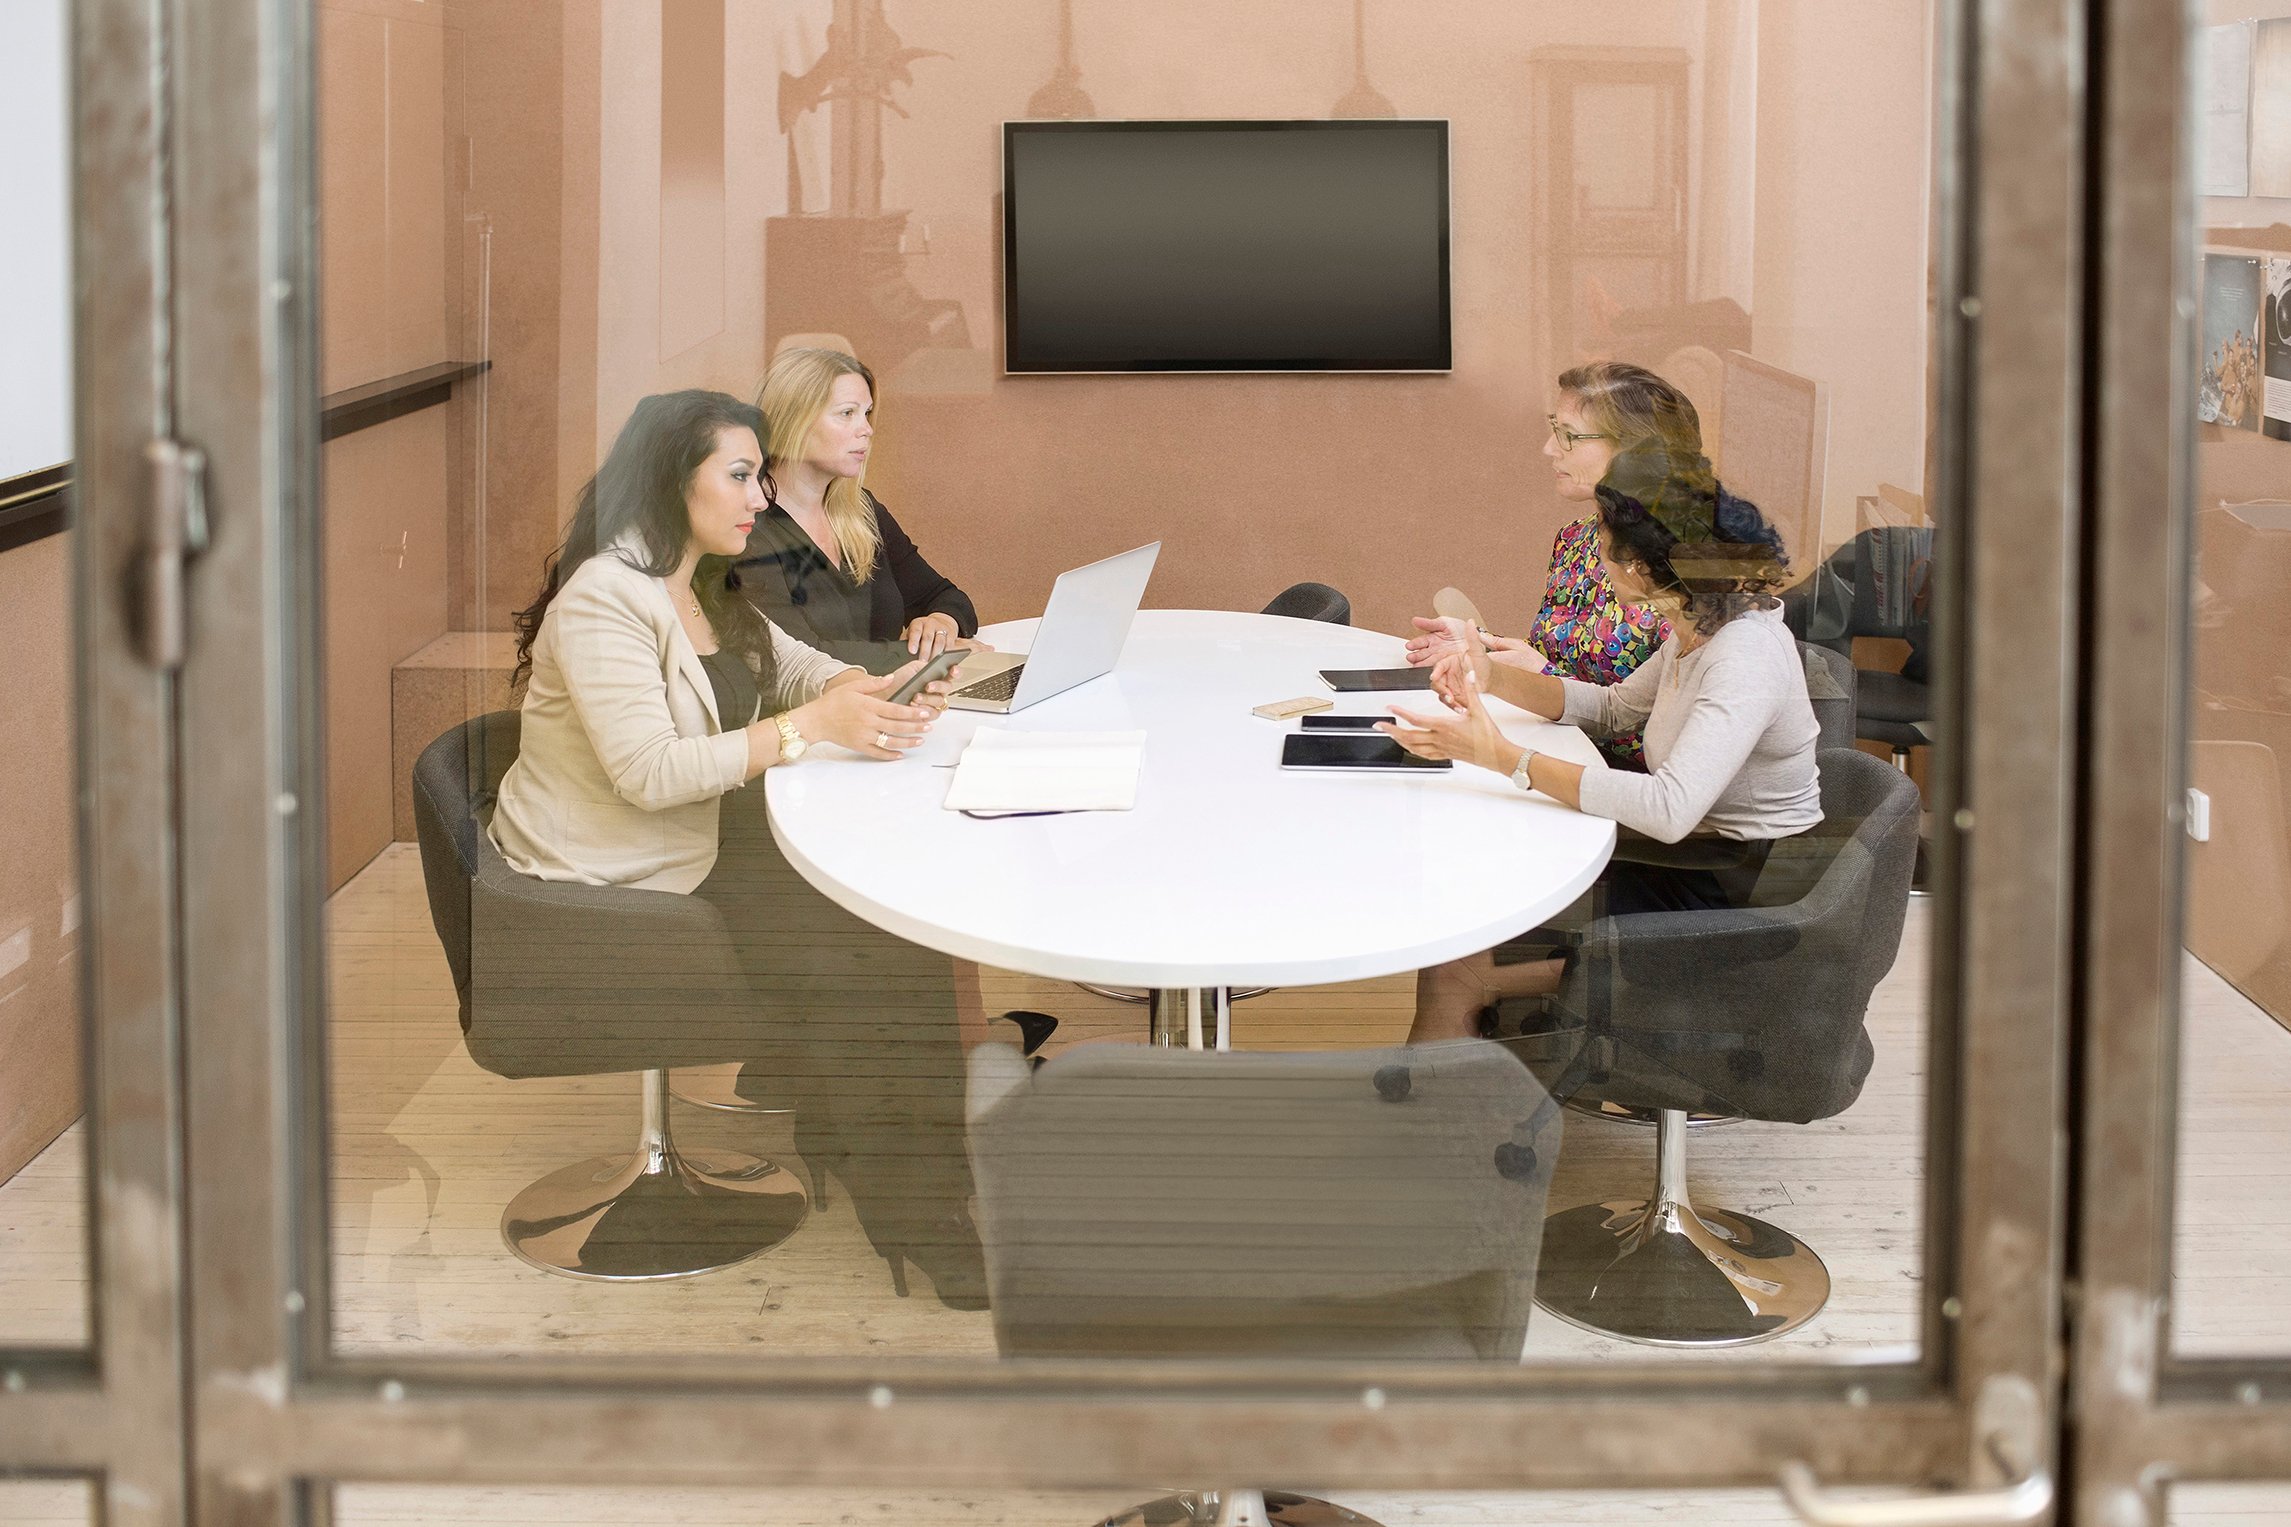 Neljä naishenkilöä istuu valkoisen pyöreän pöydän ääressä tummilla nojatuoleilla lasiseinäisessä toimistohuoneessa. Taustalla näkyy vaaleanpunainen seinä, jossa on musta kiinni oleva taulutelevisio. Naisten keskustelevat keskenään ja pöydällä on avoimena oleva kannettava tietokone sekä matkapuhelimia ja papereita.